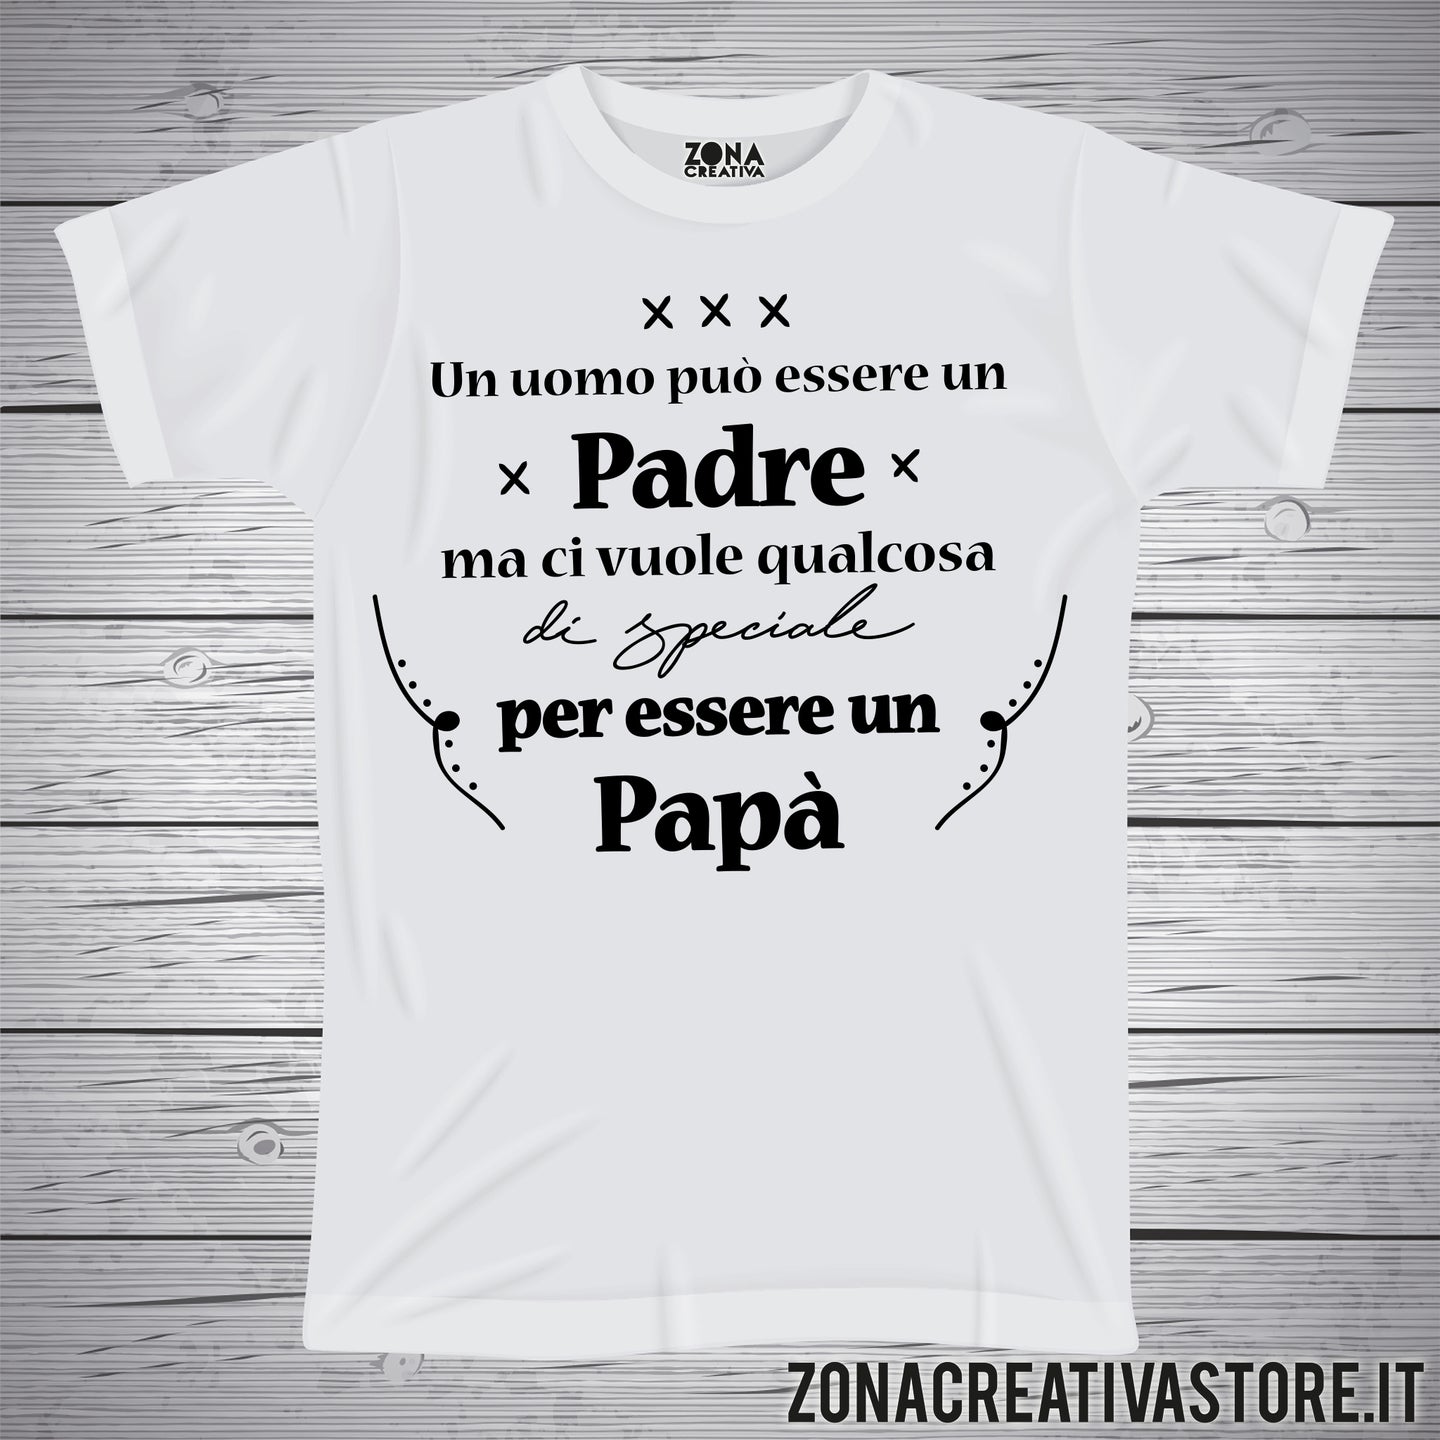 T-shirt festa del papà UN UOMO PUO' ESSERE UN PADRE – zonacreativastore